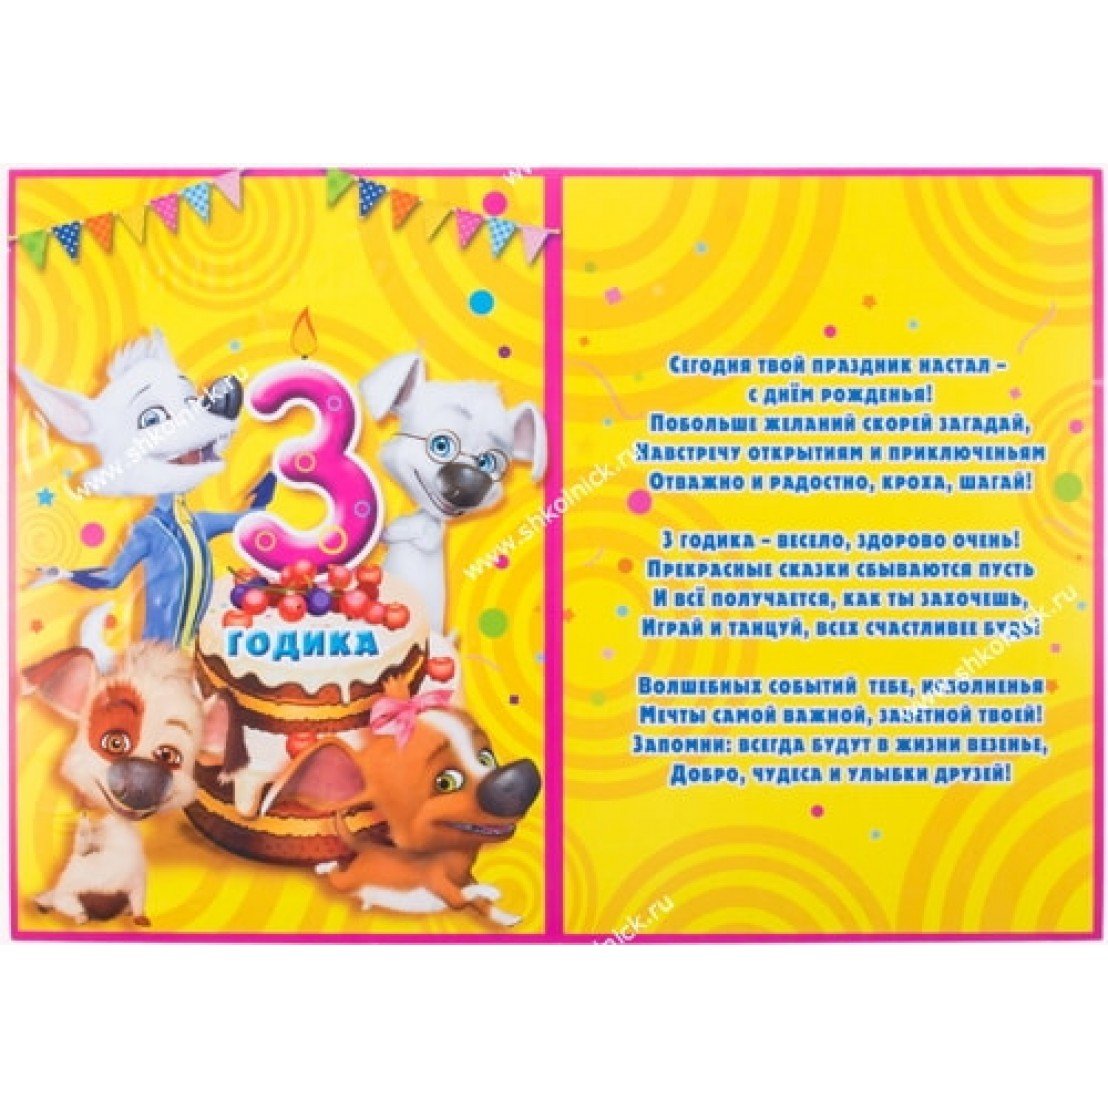 Красивая открытка с днем рождения 3 года мальчику- Скачать бесплатно на centerforstrategy.ru